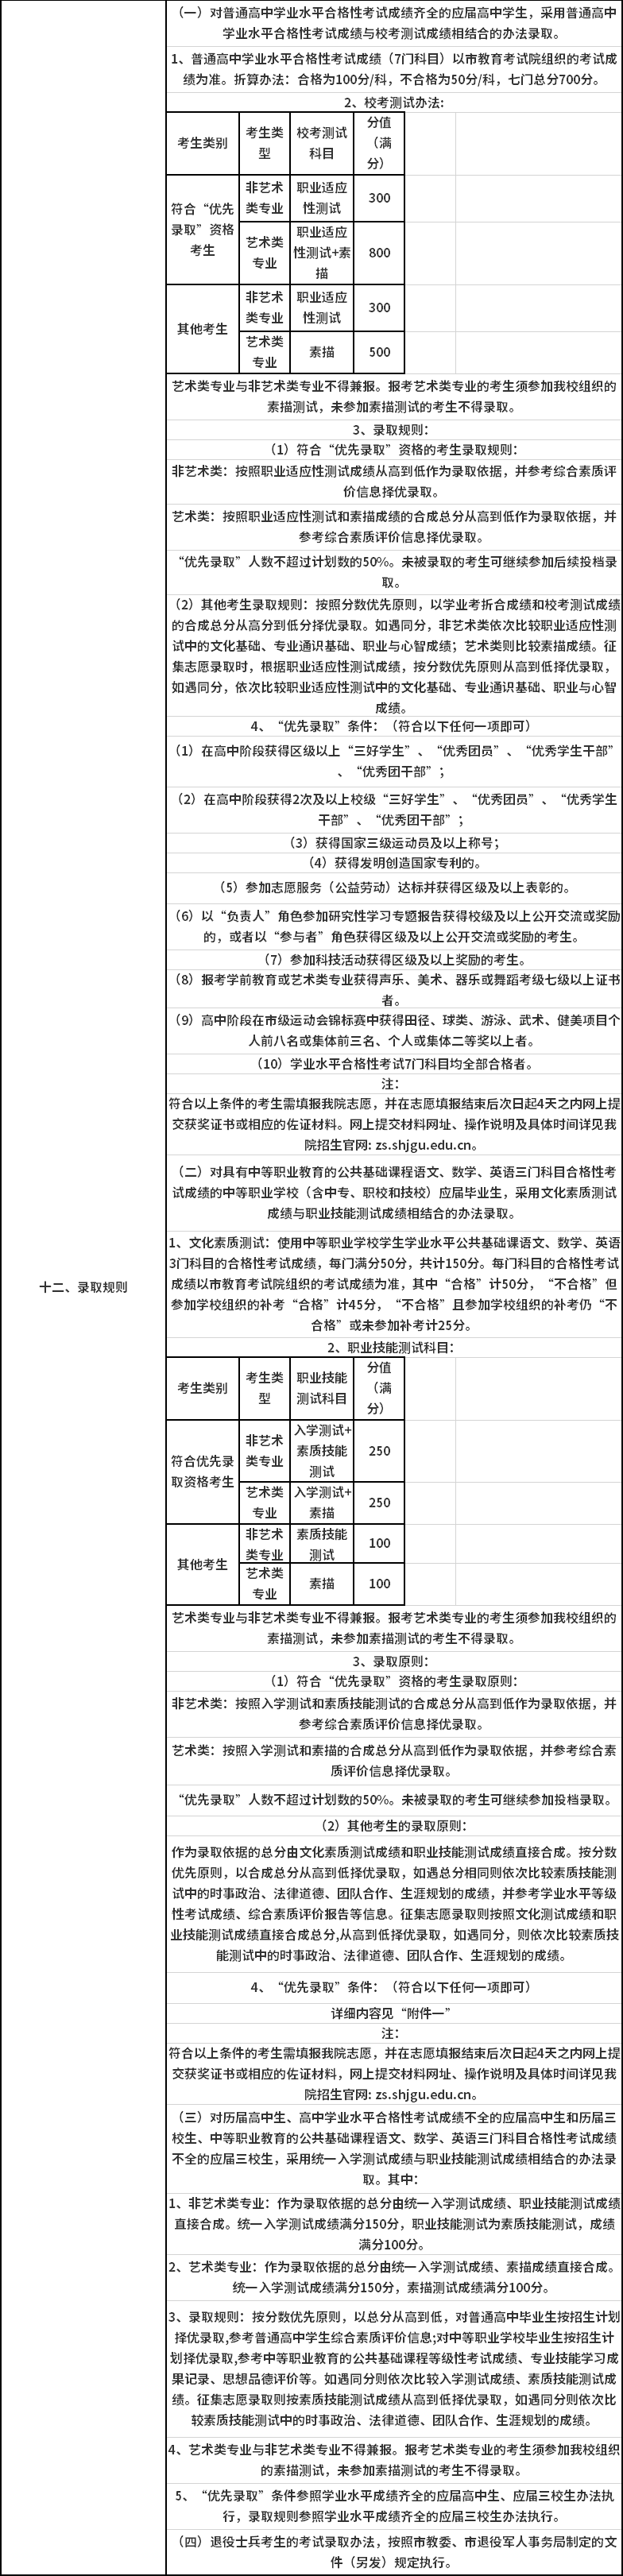 2020年上海济光职业技术学院专科层次依法自主招生录取规则.png